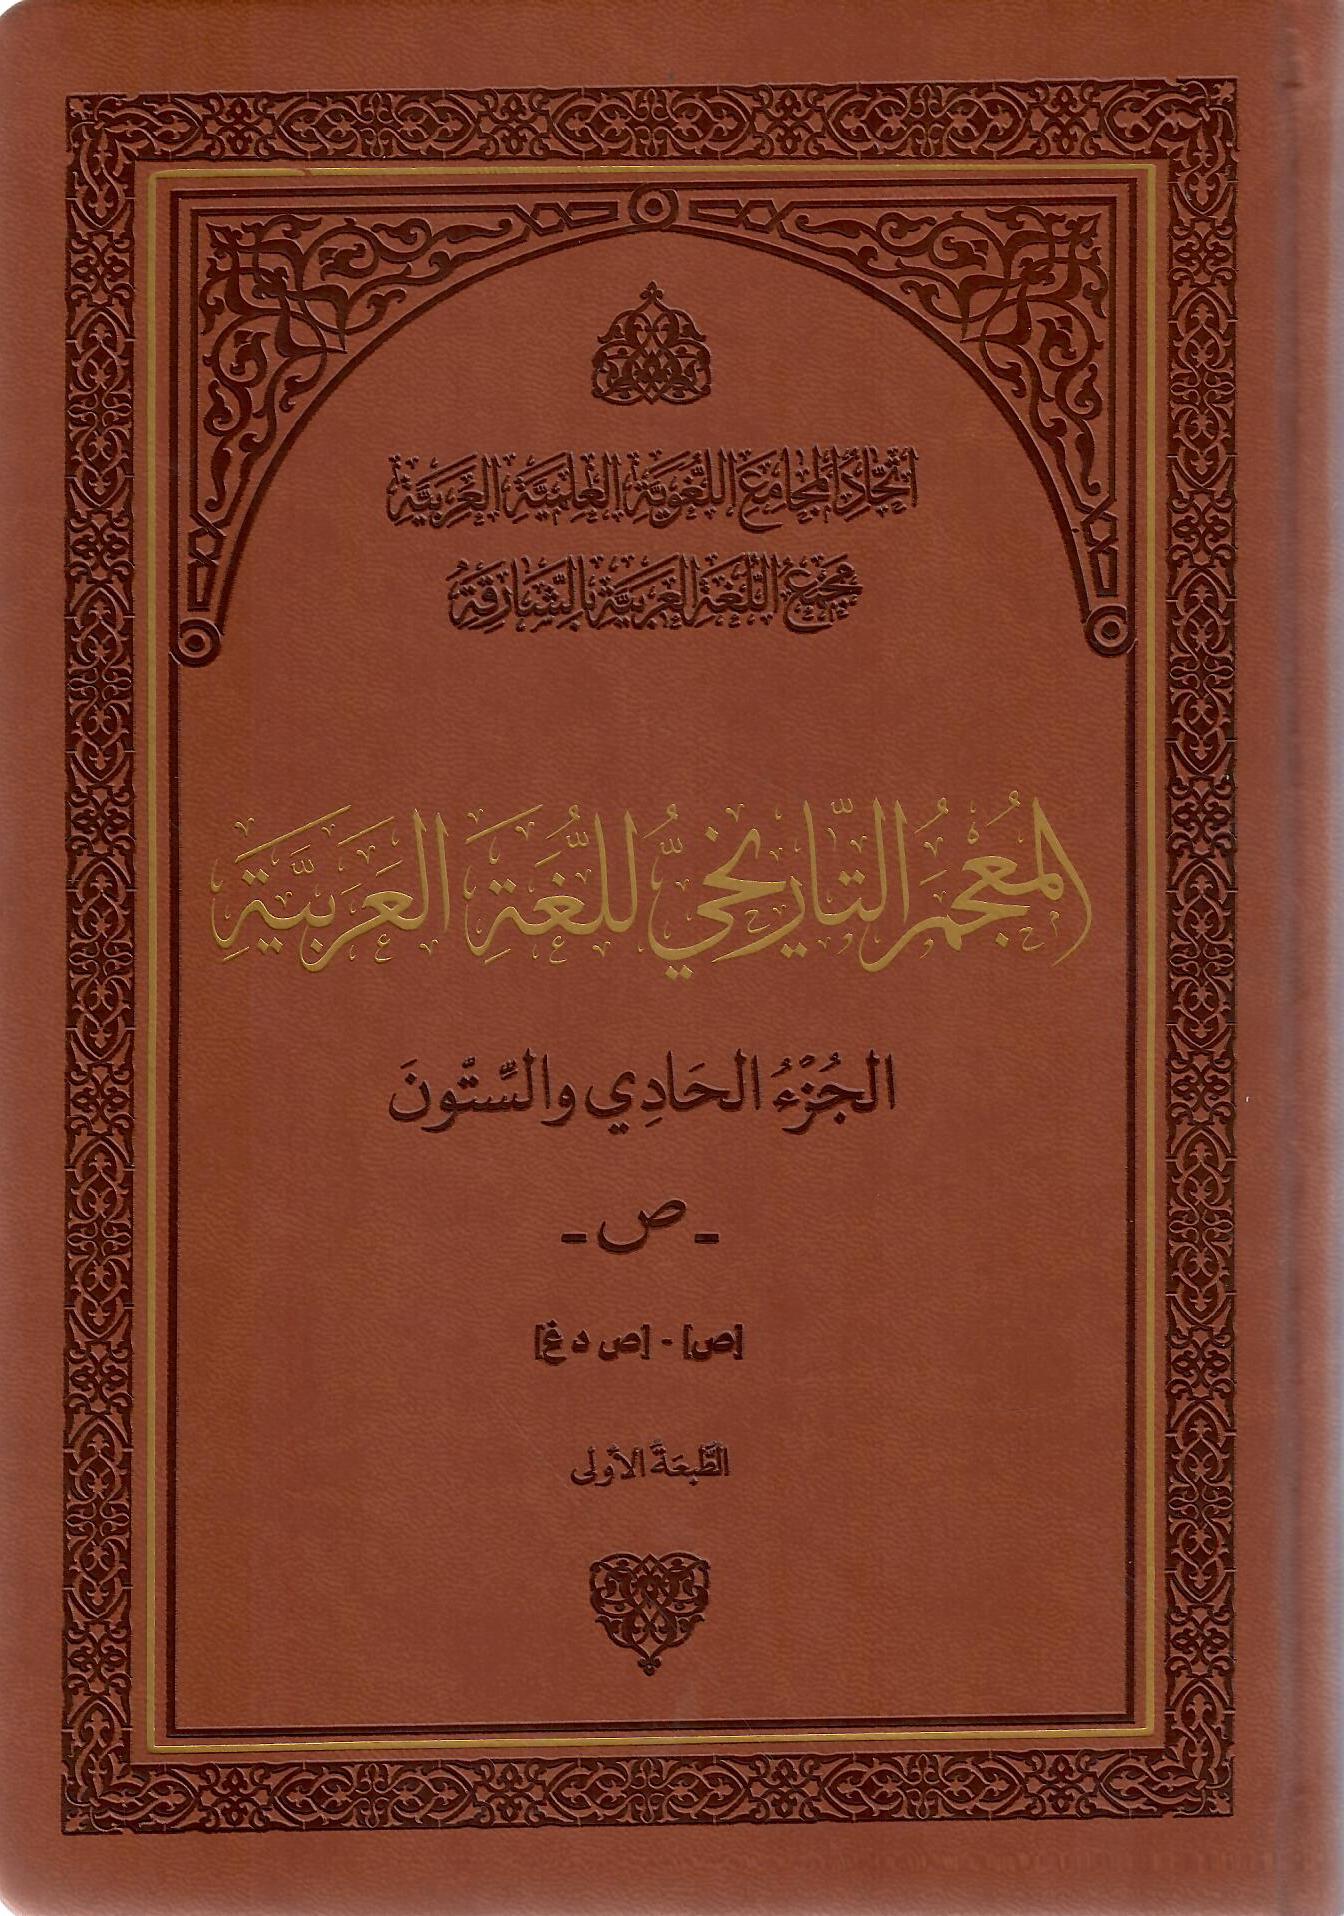 المعجم التاريخي للغة العربية الجزء الحادي والستون